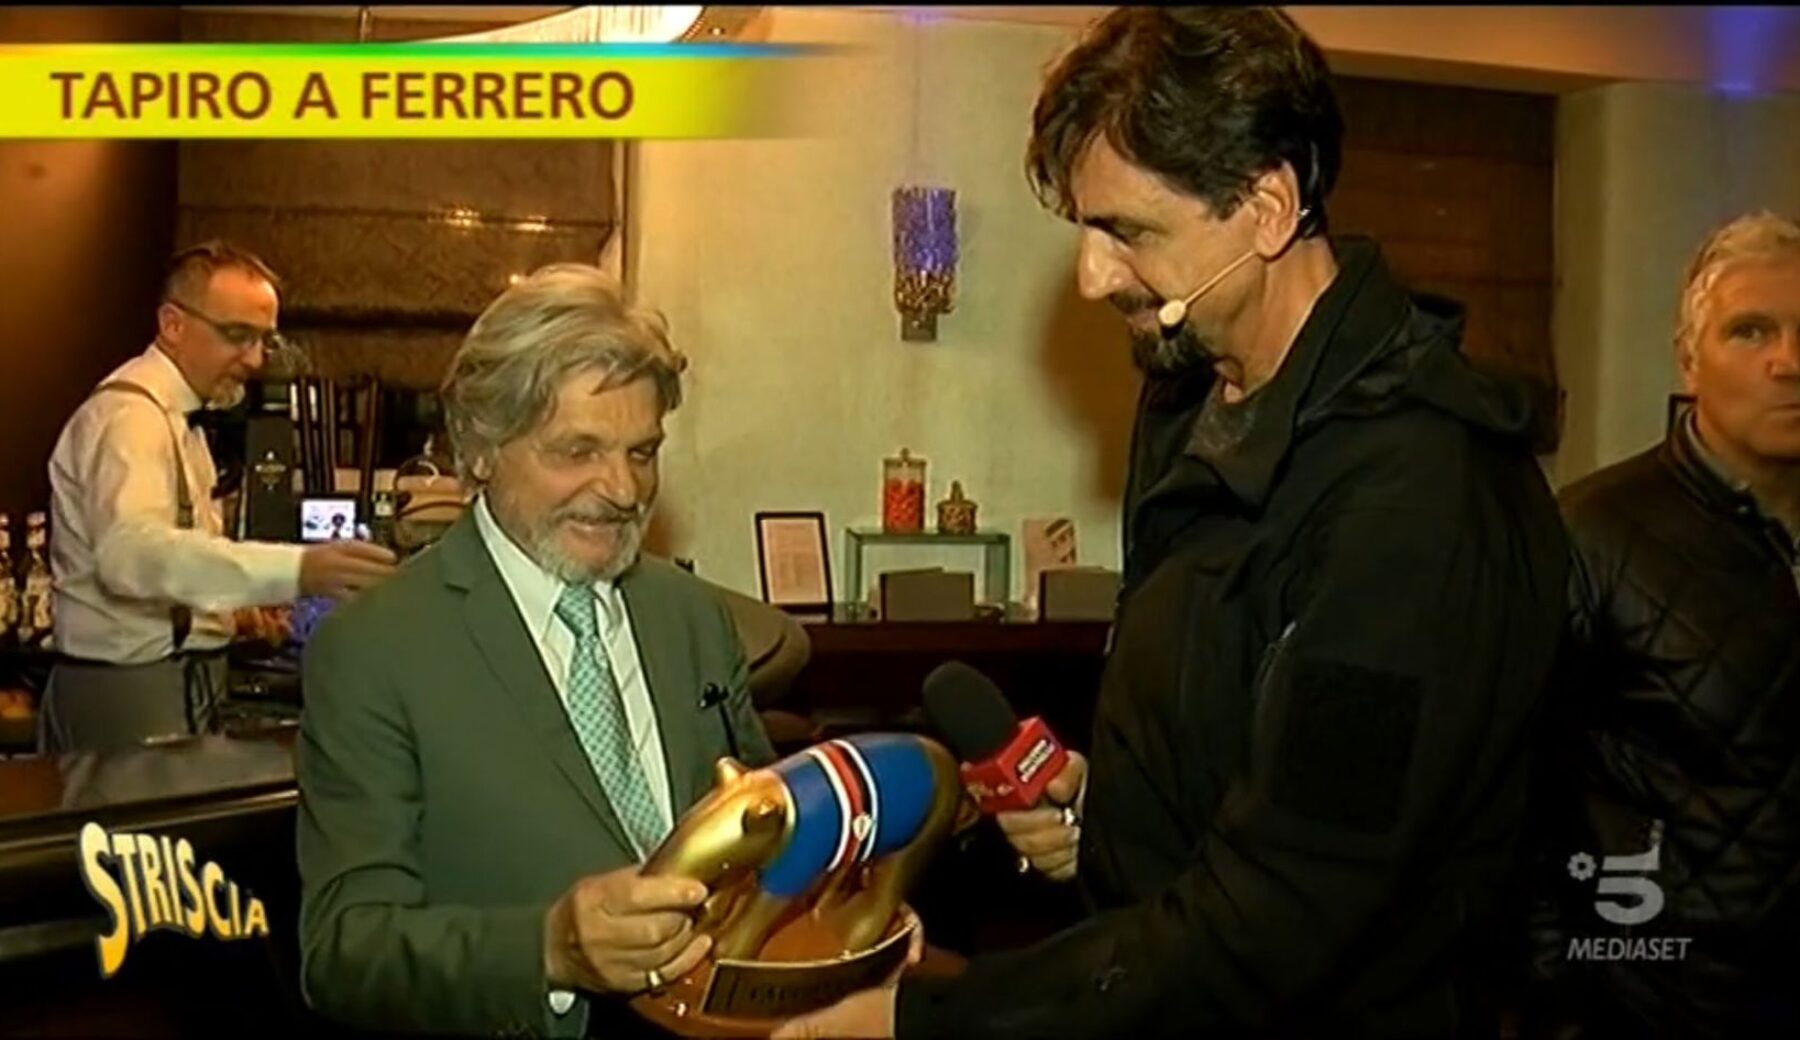 Il Tapiro di Massimo Ferrero indossava la maglia della Samp